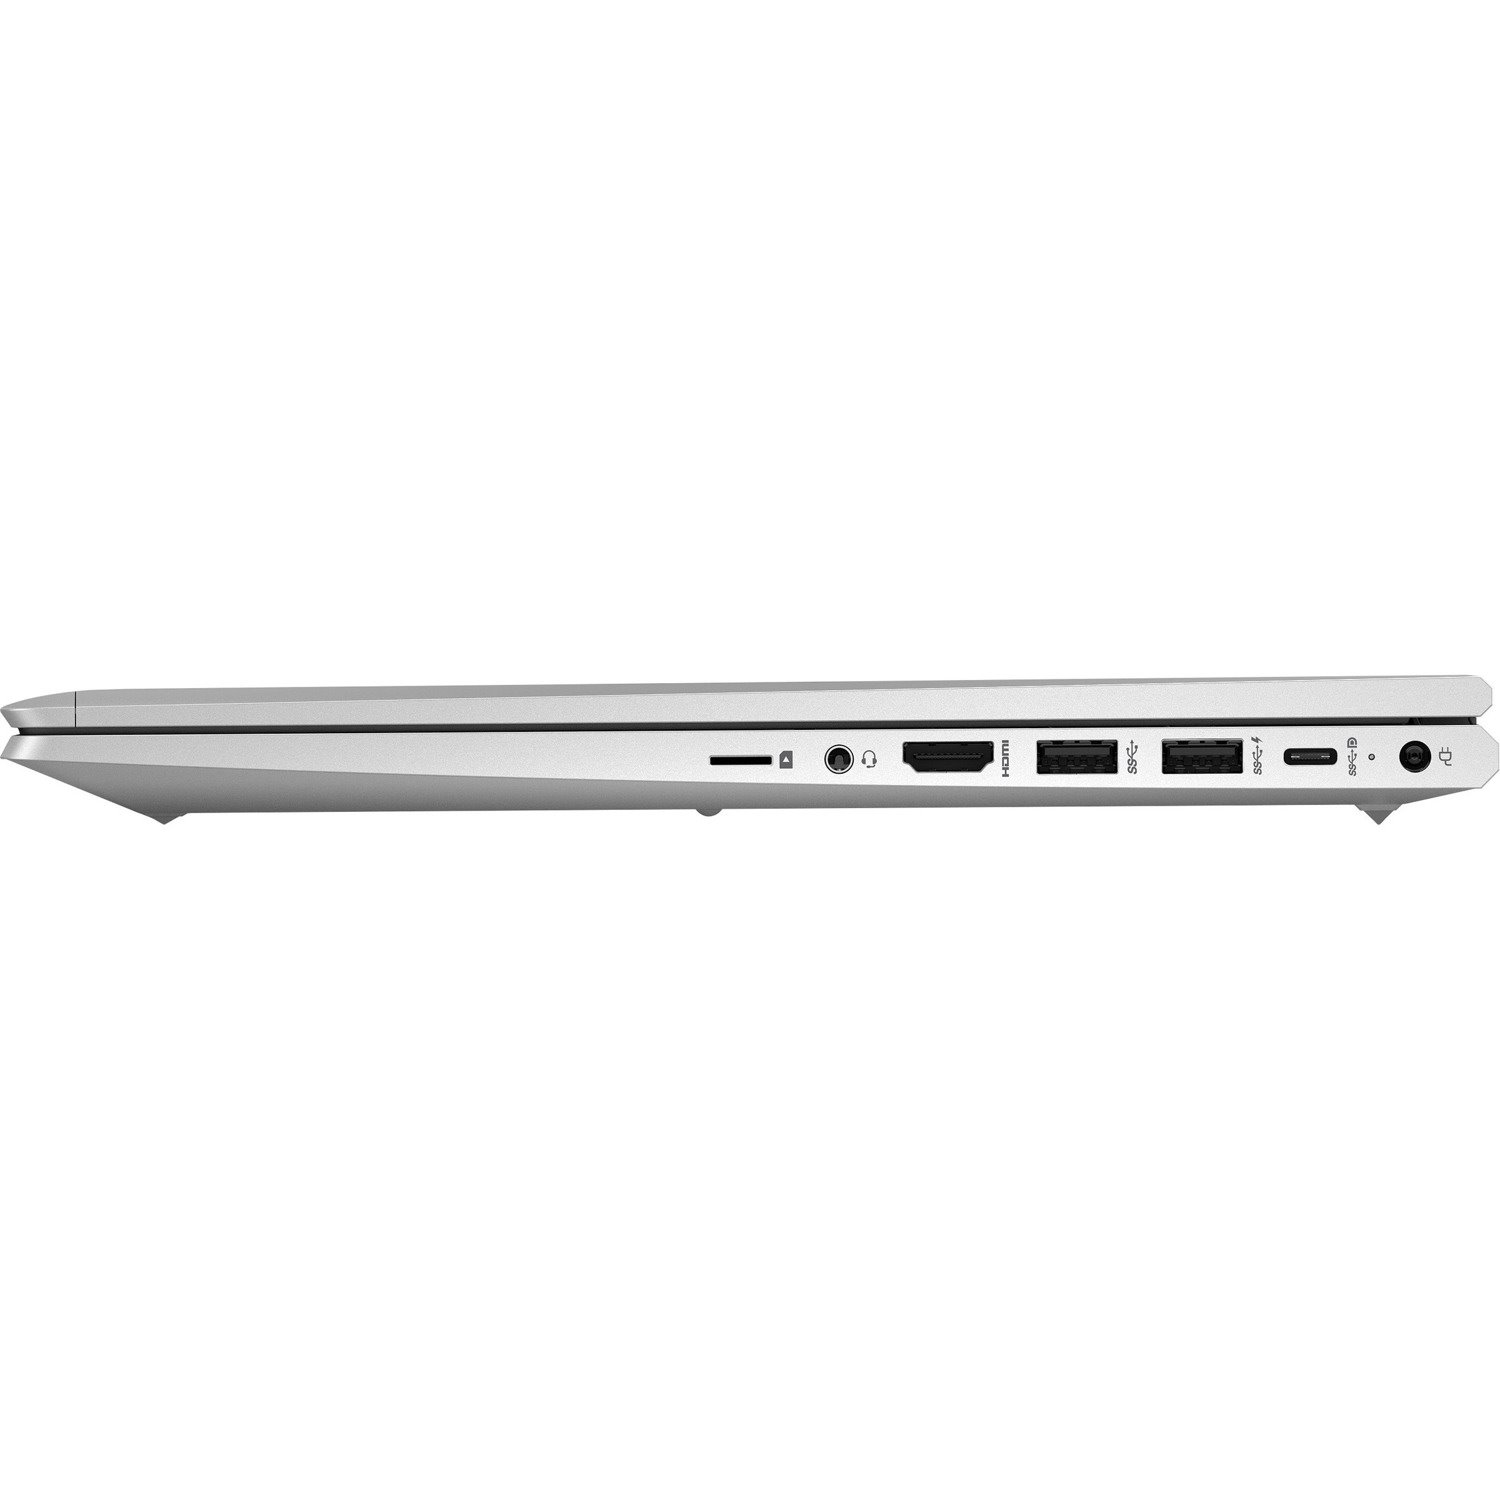 HP ProBook 650 G8 LTE Advanced, DC-HSPA+, HSPA+, UMTS 39.6 cm (15.6") Notebook - Full HD - 1920 x 1080 - Intel Core i7 11th Gen i7-1165G7 Quad-core (4 Core) - 16 GB RAM - 512 GB SSD